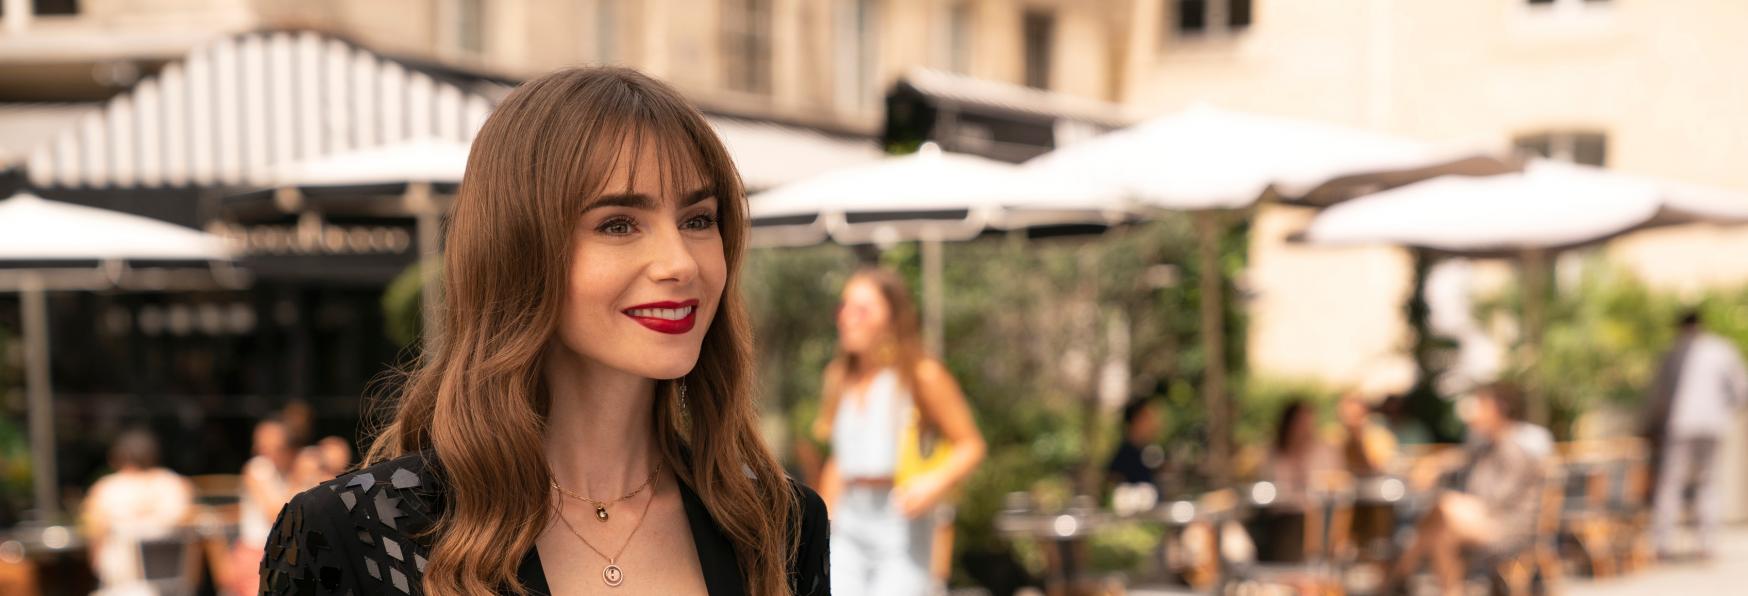 Emily in Paris 3: Netflix condivide le Prime Immagini della nuova Stagione